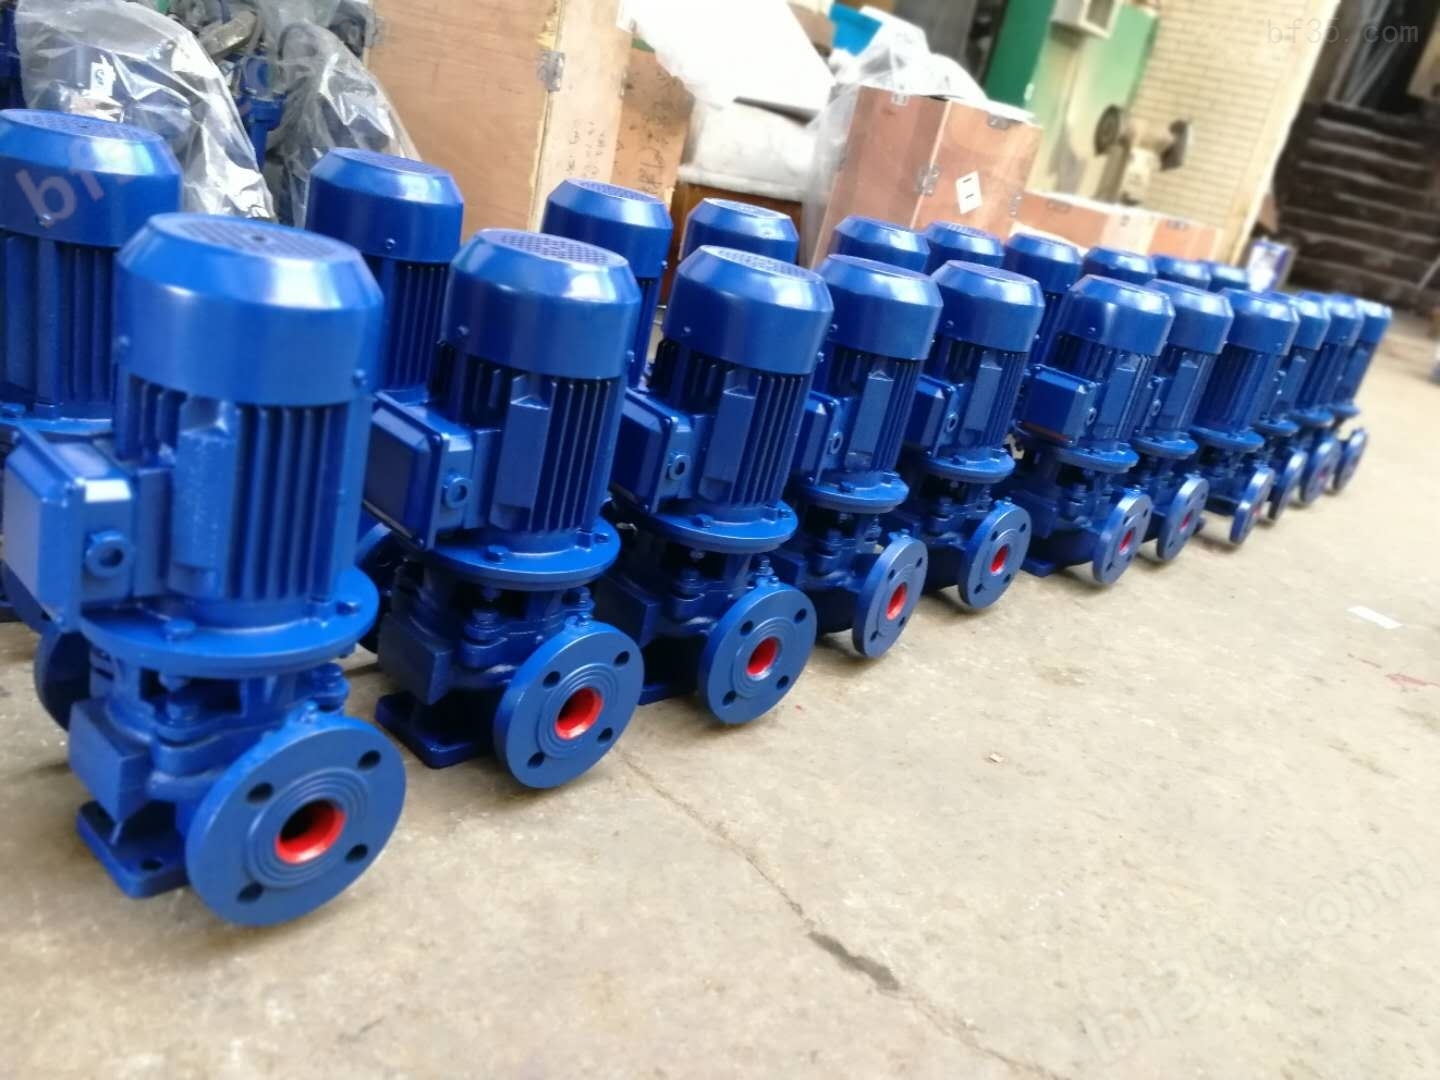 立式管道泵厂家家用微型泵 立式离心泵isg型